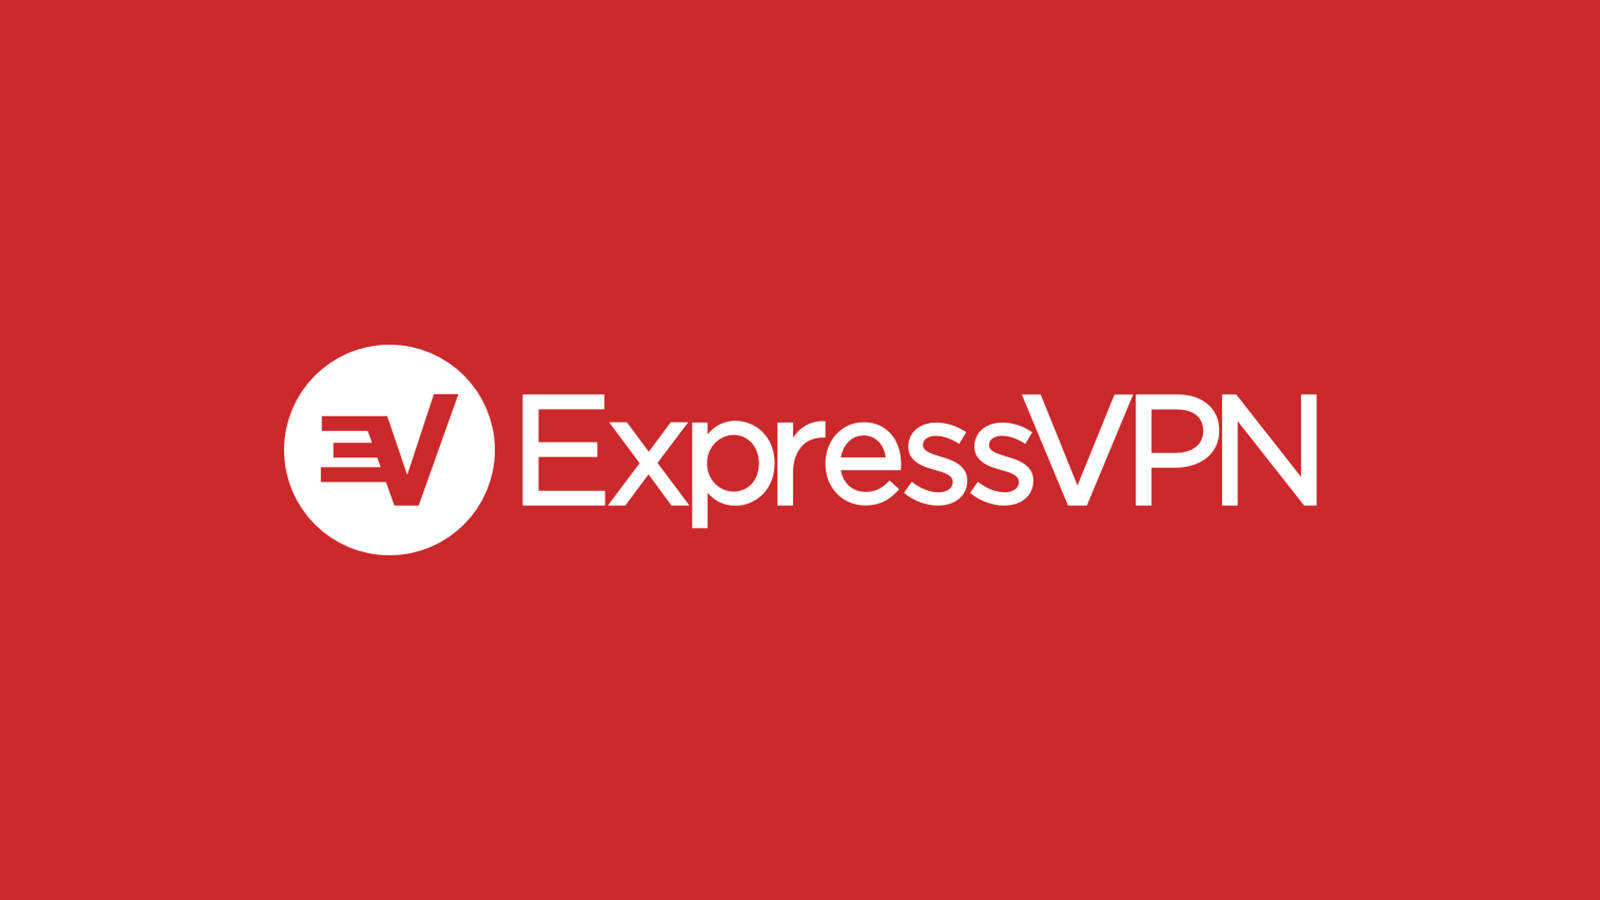 Expressvpn Download the